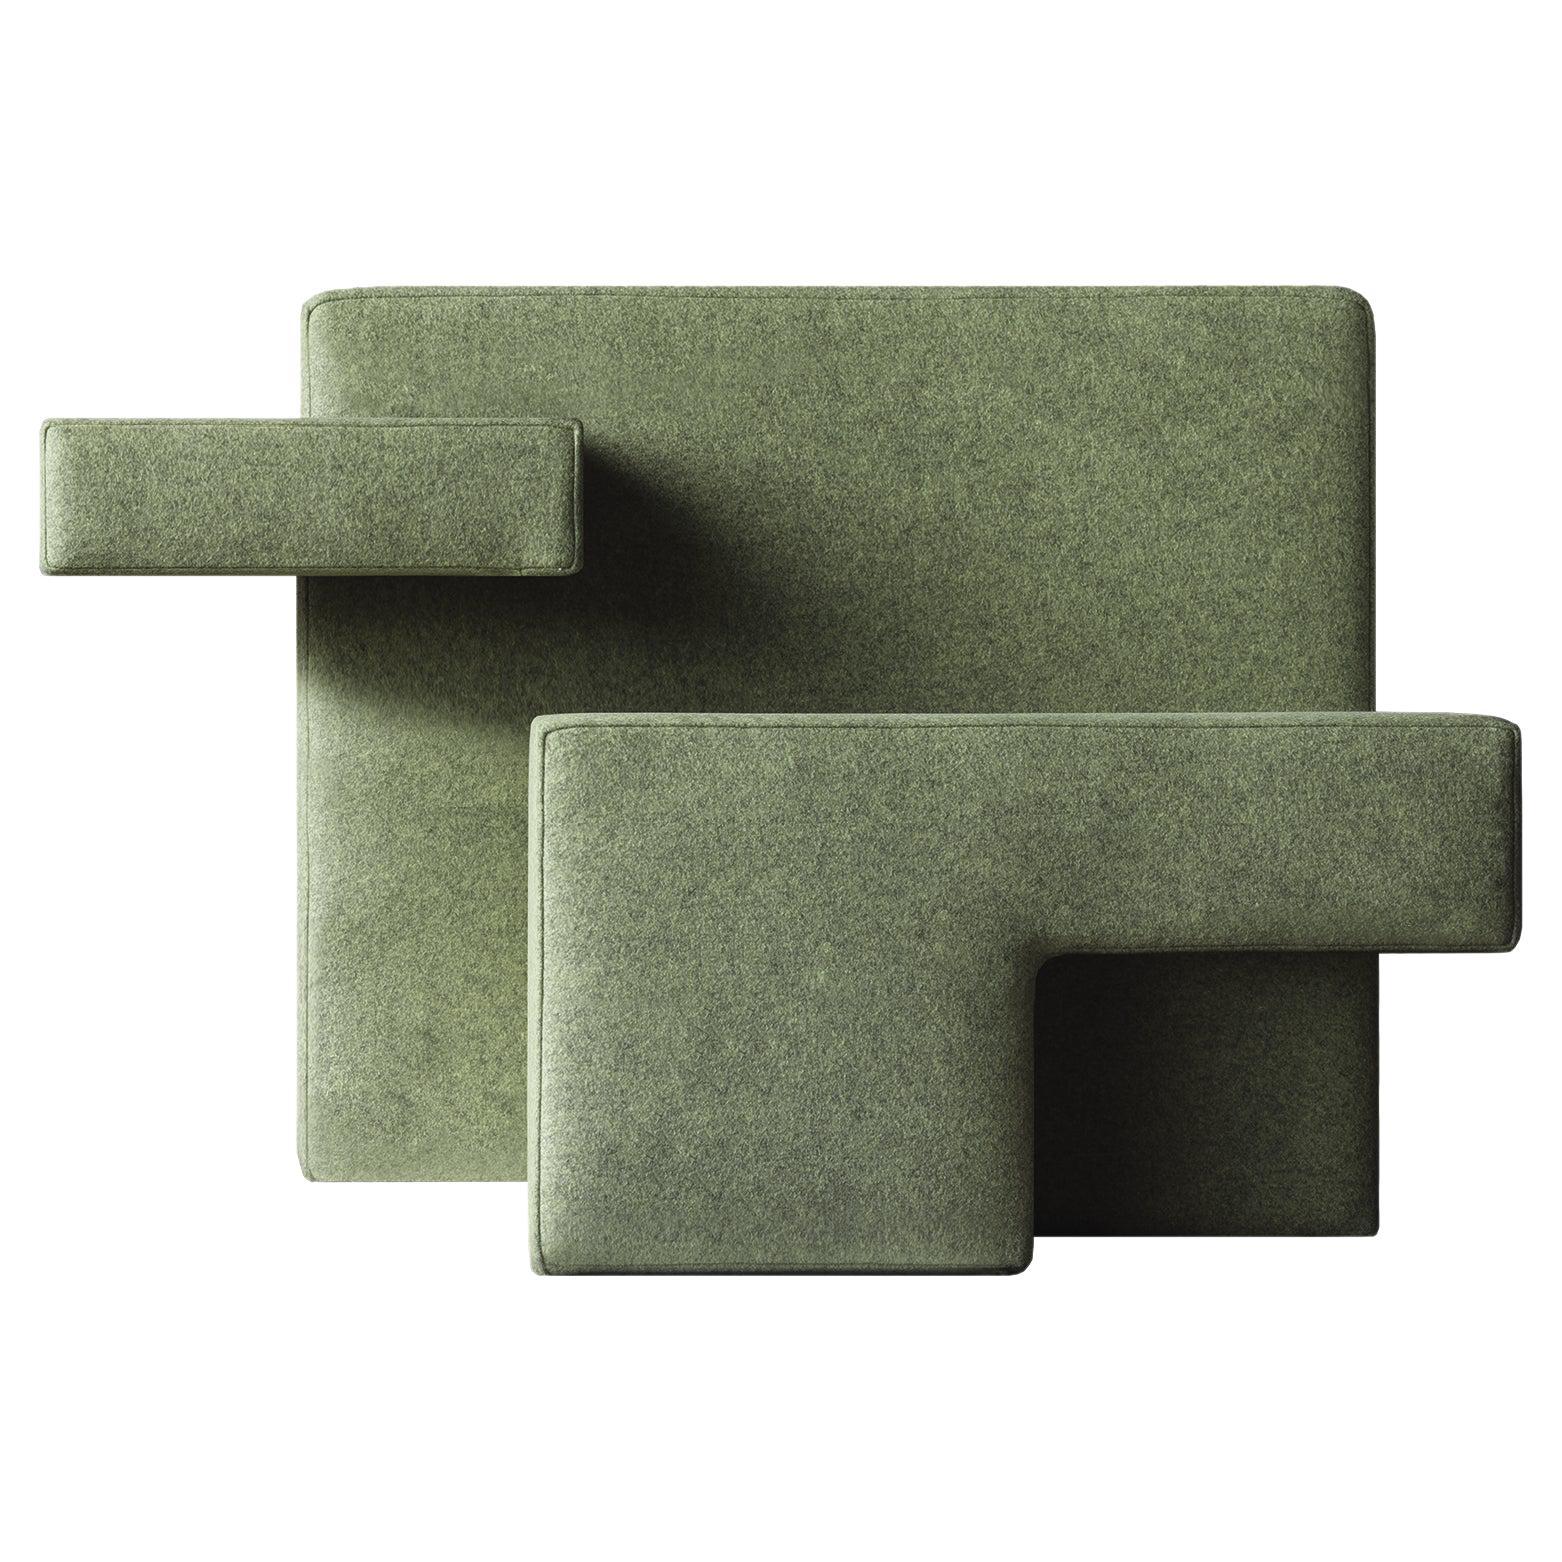 Fauteuil primitif vert, conçu par Studio Nucleo, fabriqué en Italie en vente